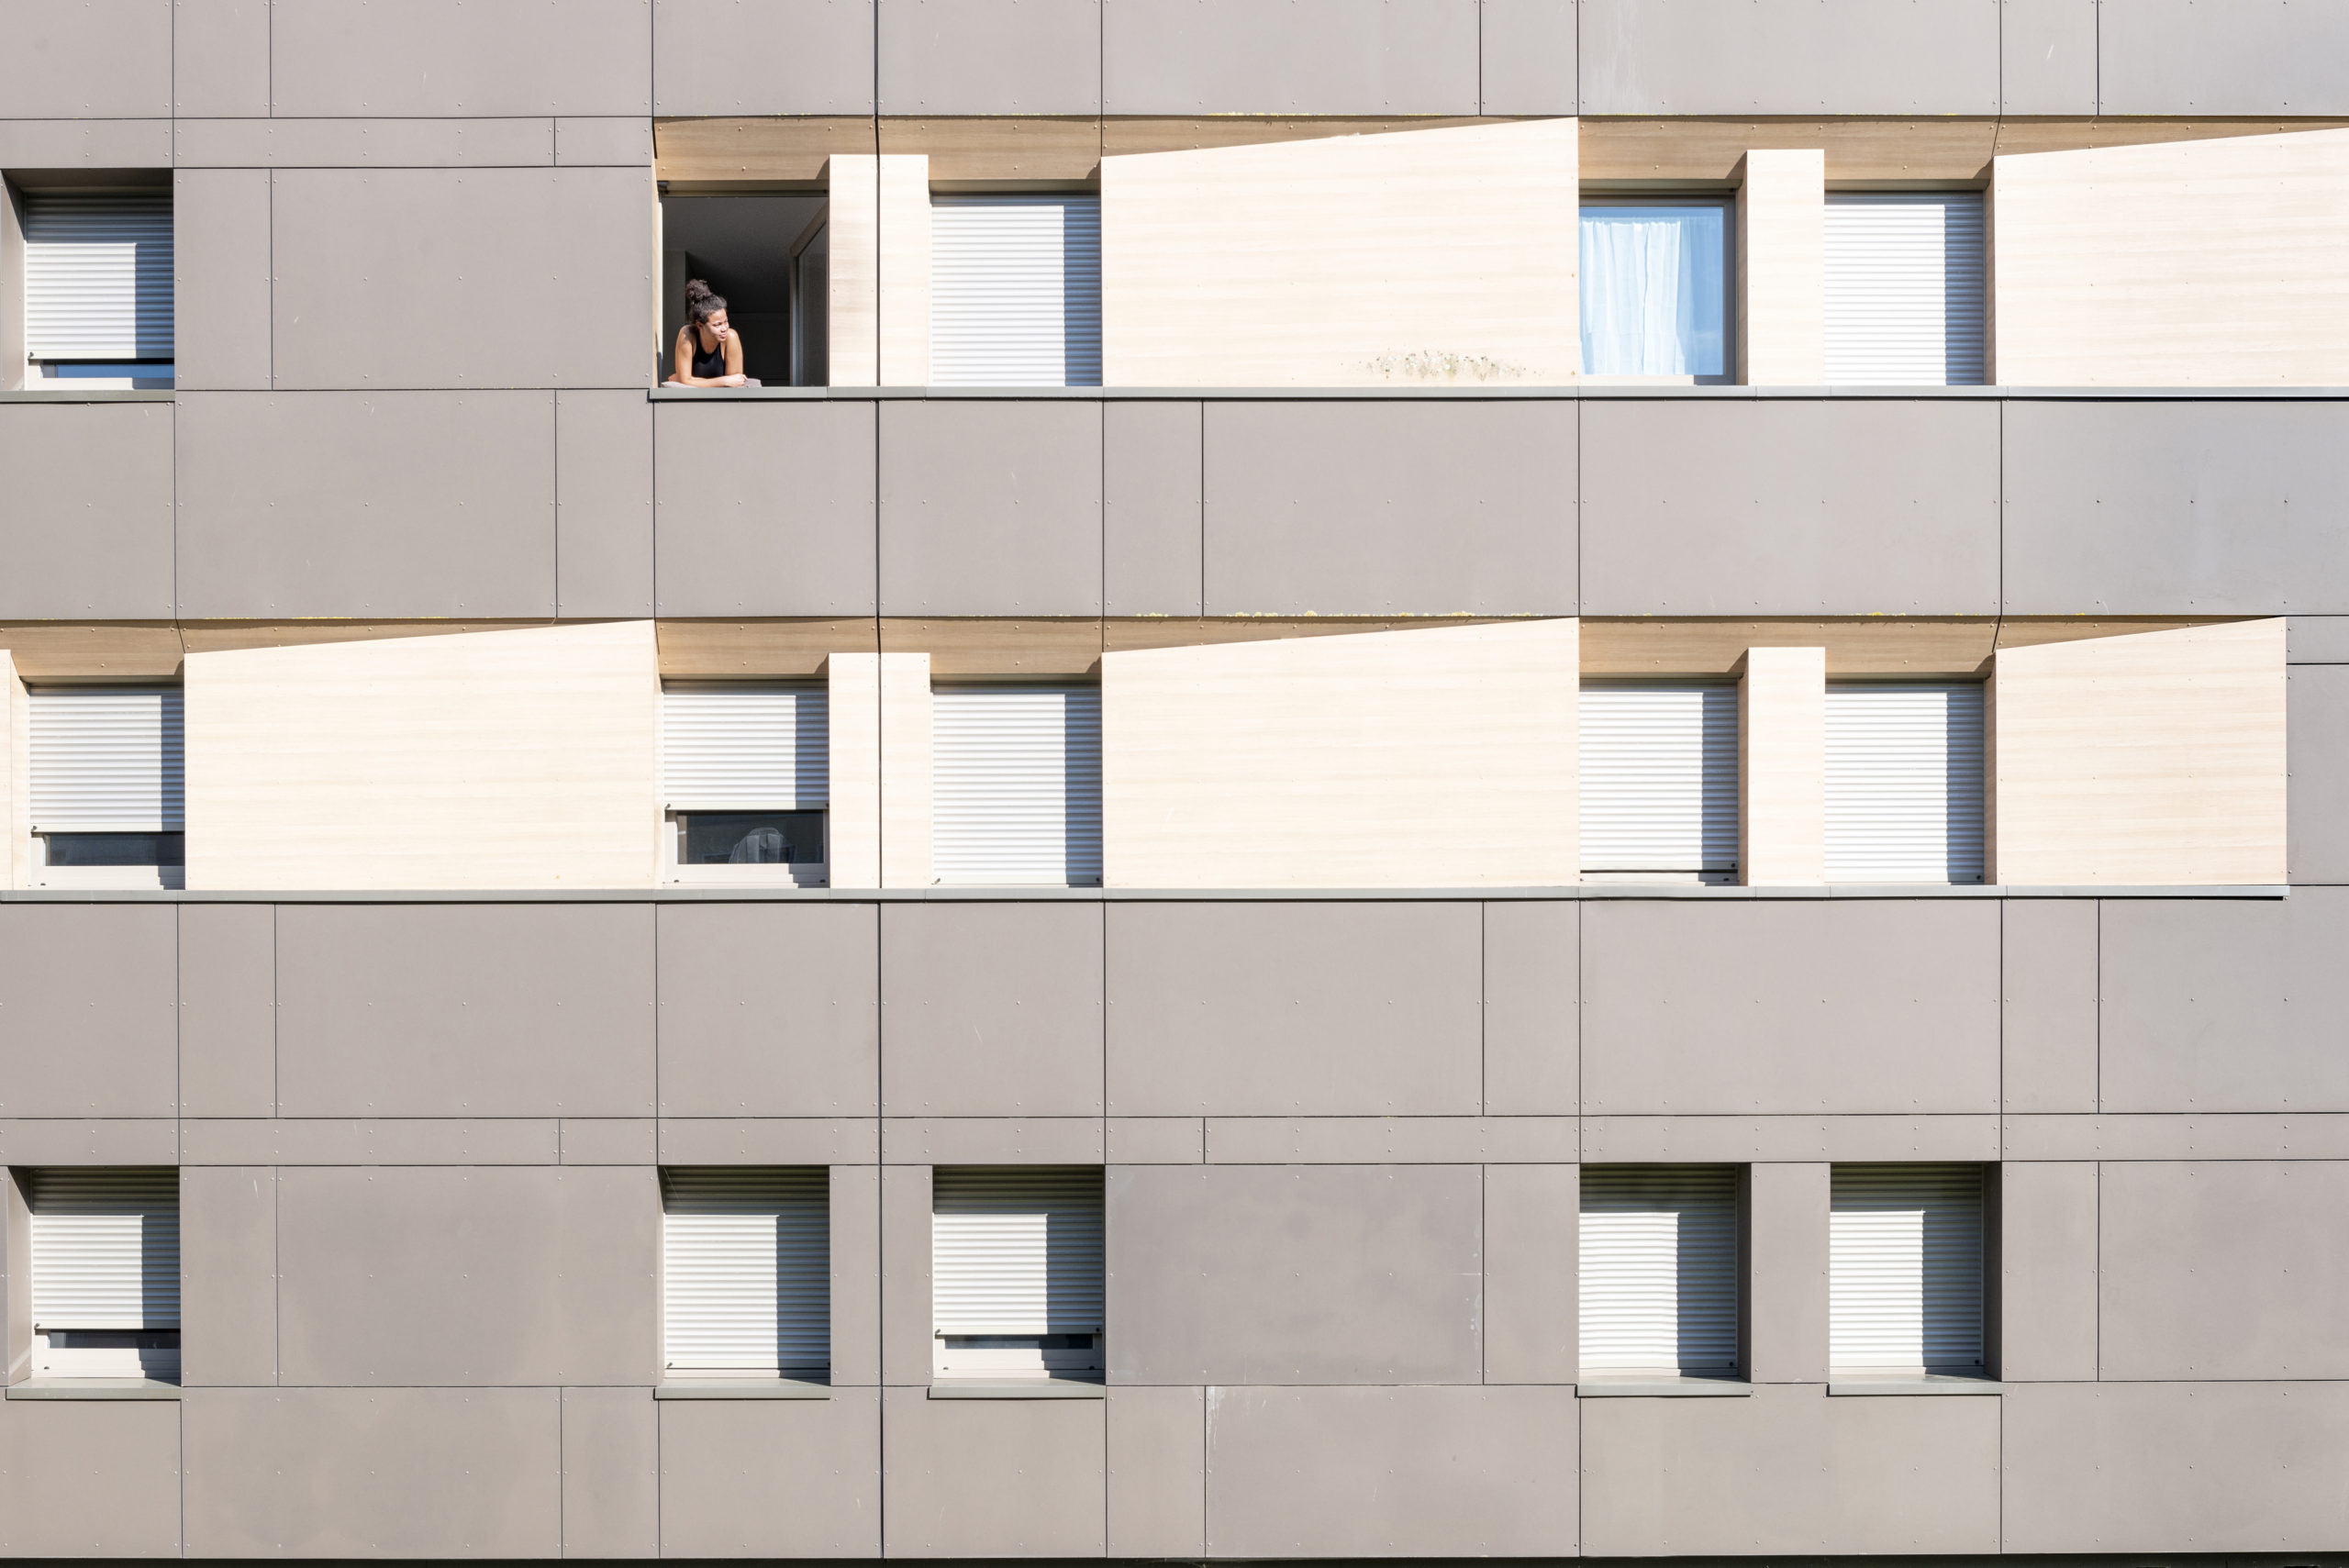 Une étudiante confinée dans une résidence universitaire de Poitiers prend l'air depuis sa fenêtre. De nombreux appartements semblent vides, les étudiants étant retournés dans leurs familles.